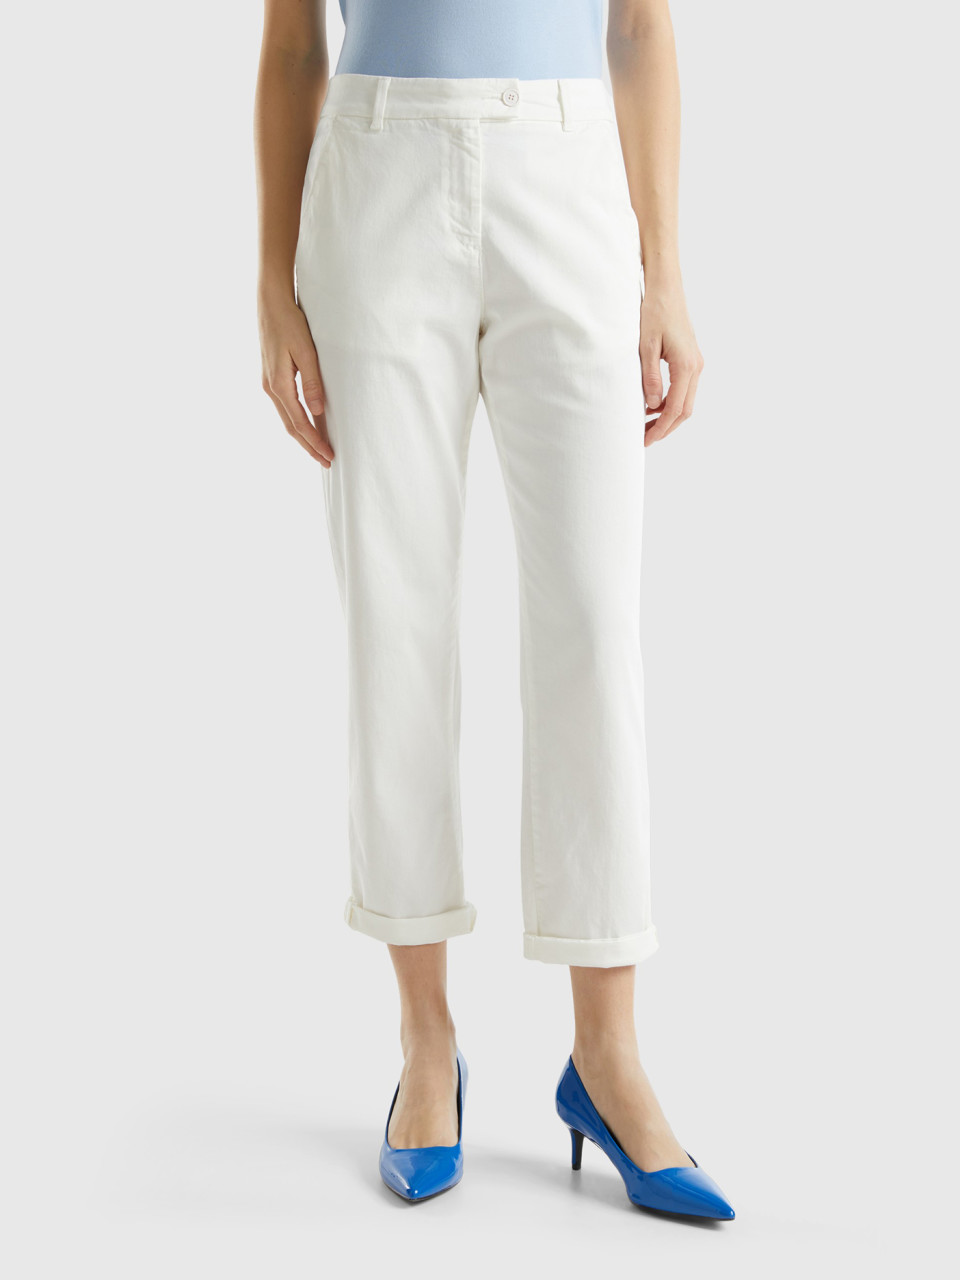 Benetton, Pantalones Chinos De Algodón Elástico, Blanco Crema, Mujer